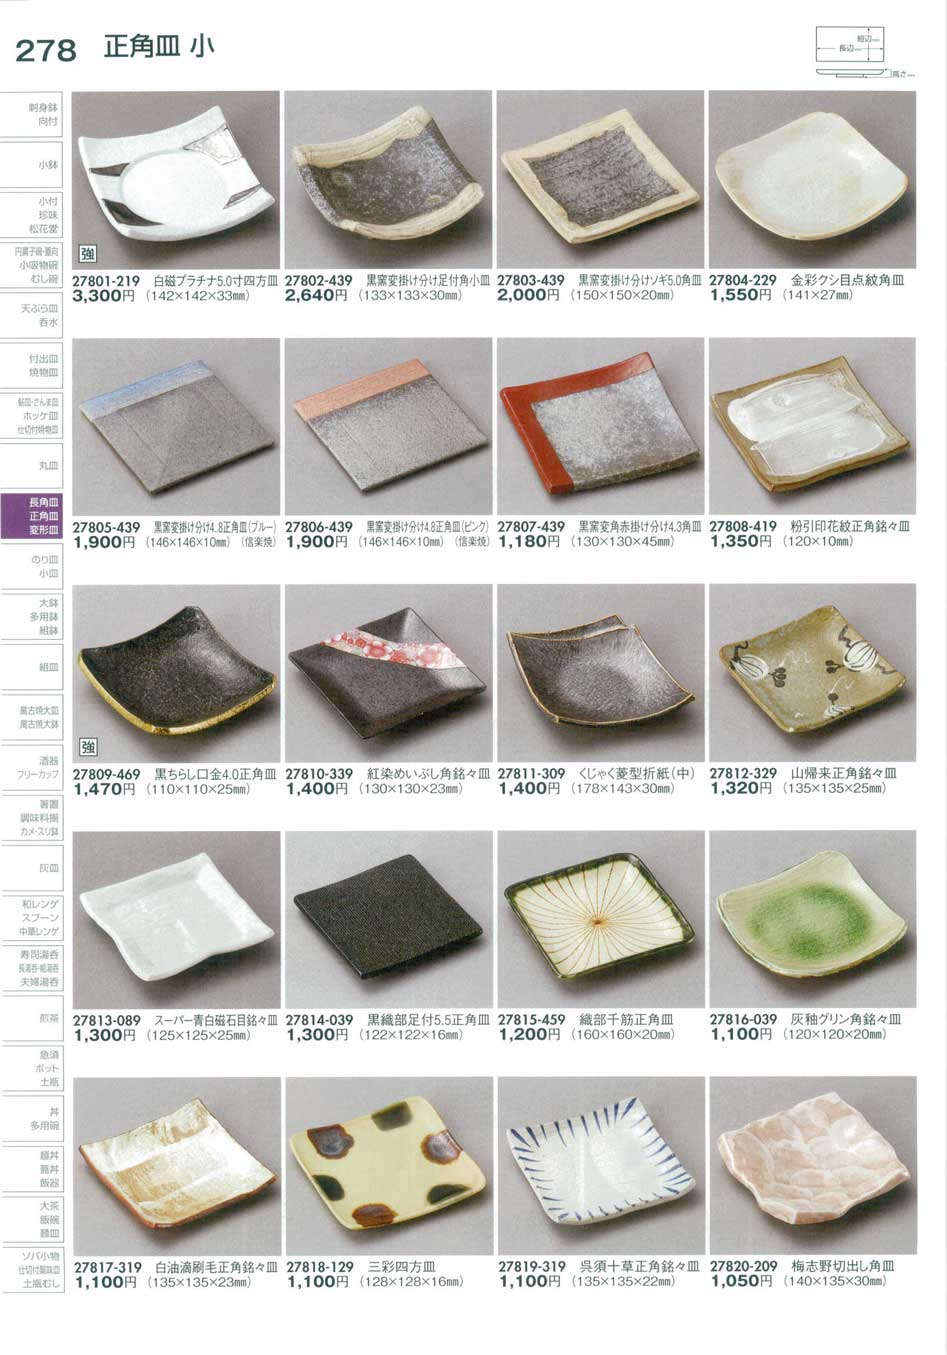 食器 正角皿小・のり皿Small Square Plate 陶里２９－278ページ